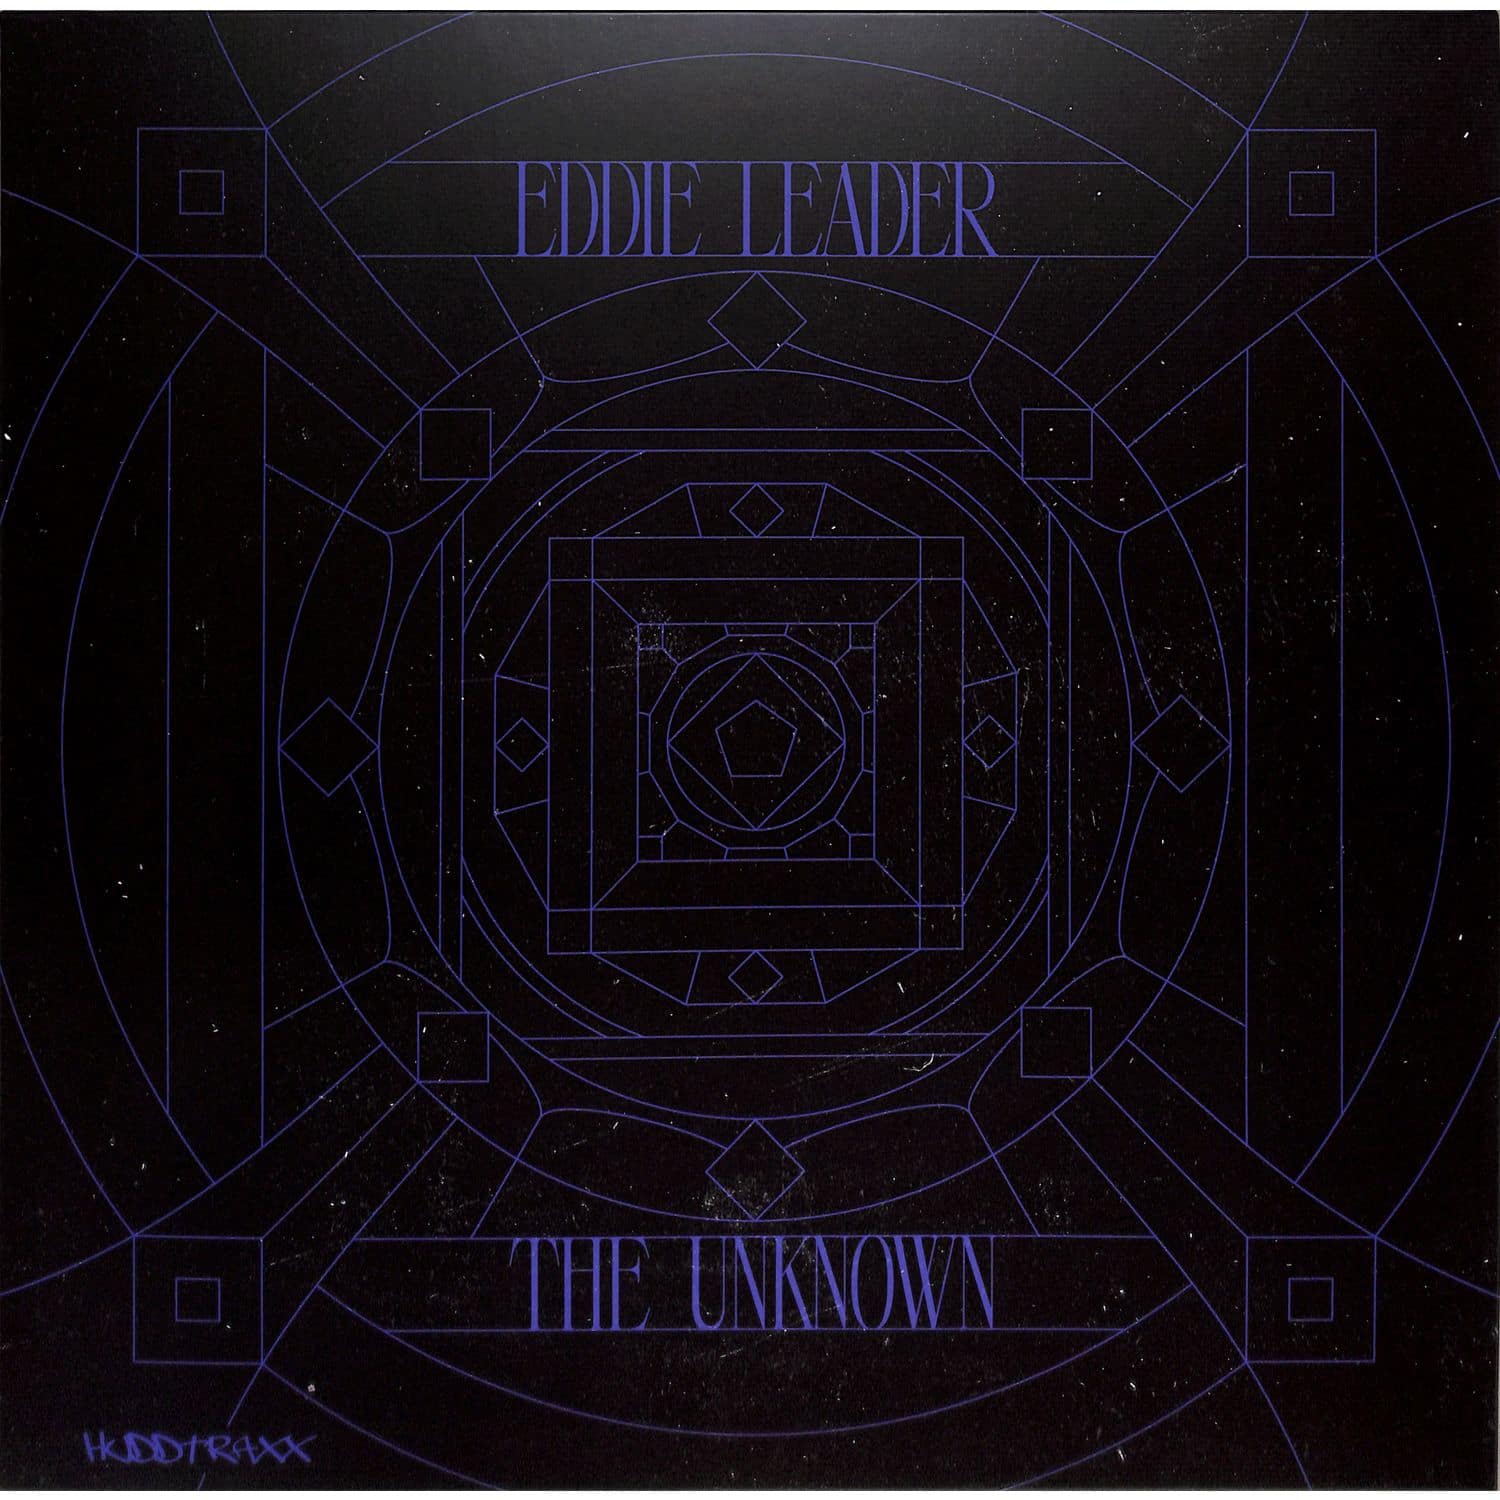 Eddie Leader - THE UNKNOWN